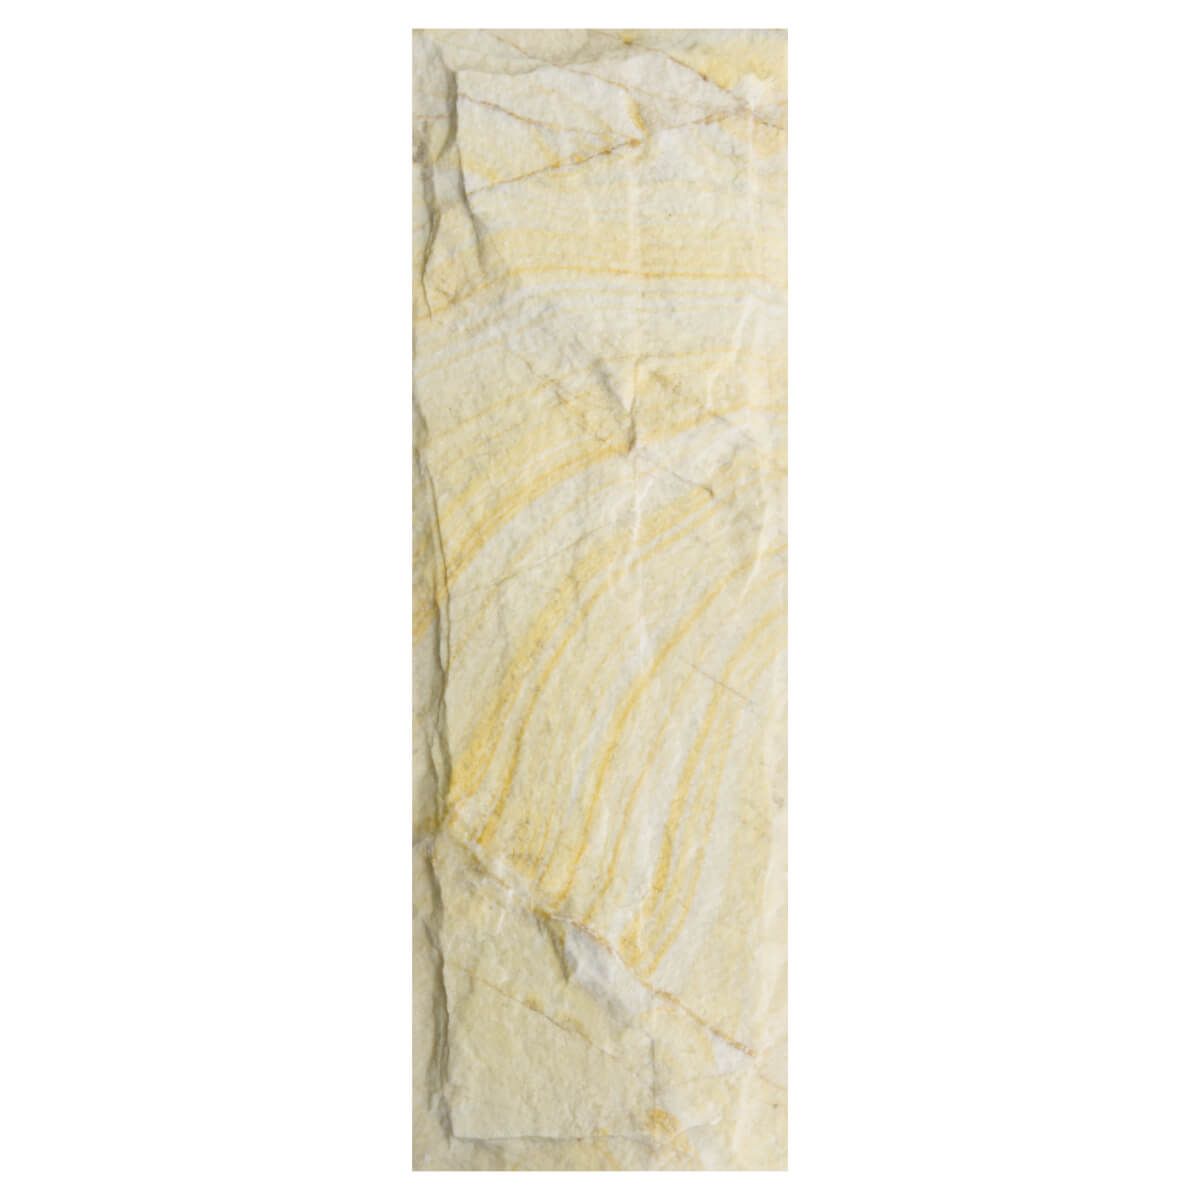 Płytka marmurowa Yellow Stone 30x10x1,5 cm